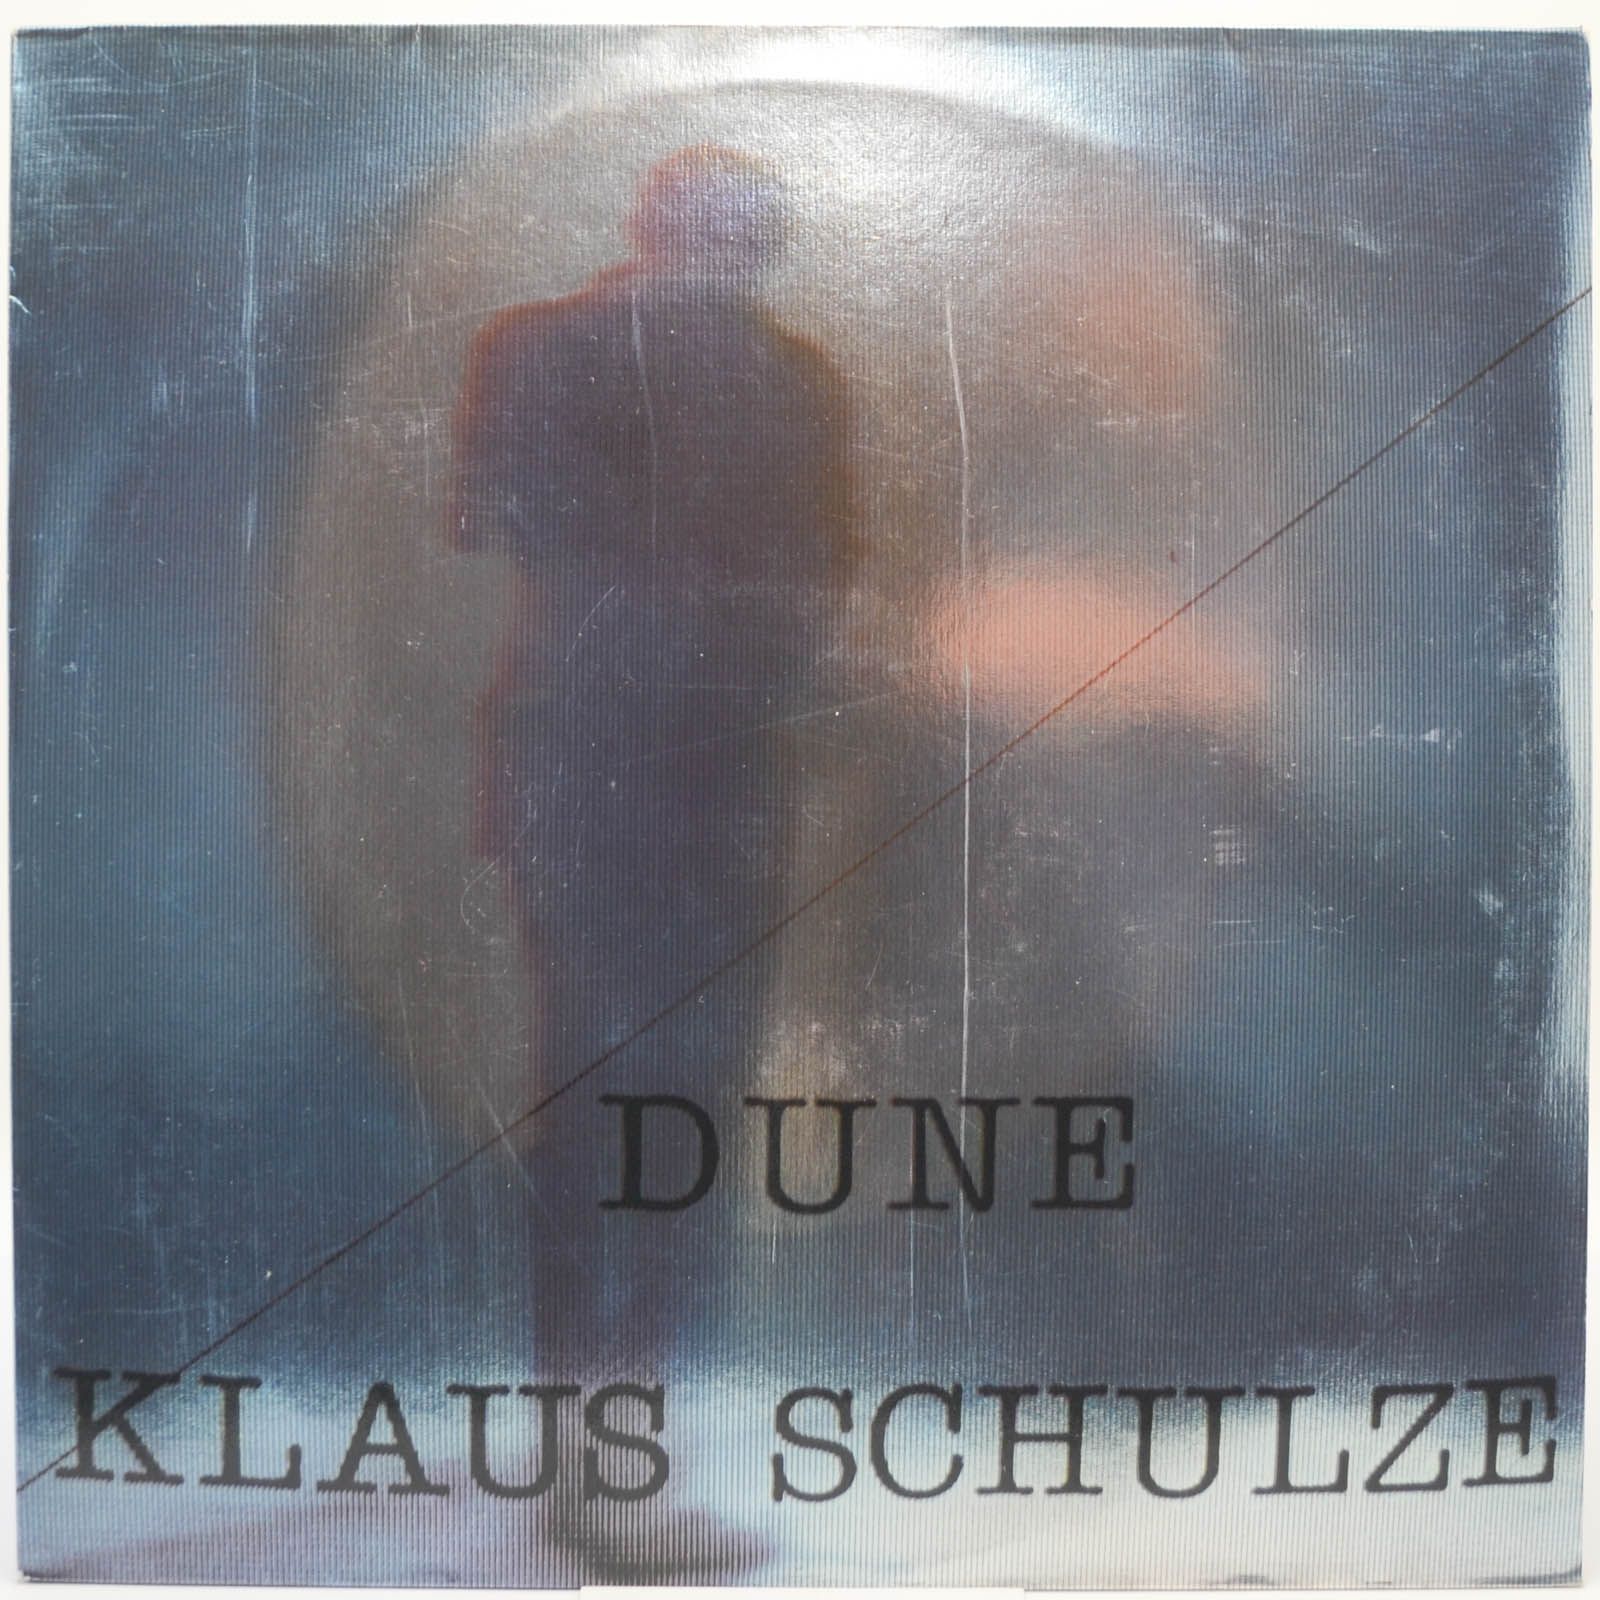 Klaus Schulze — Dune, 1979